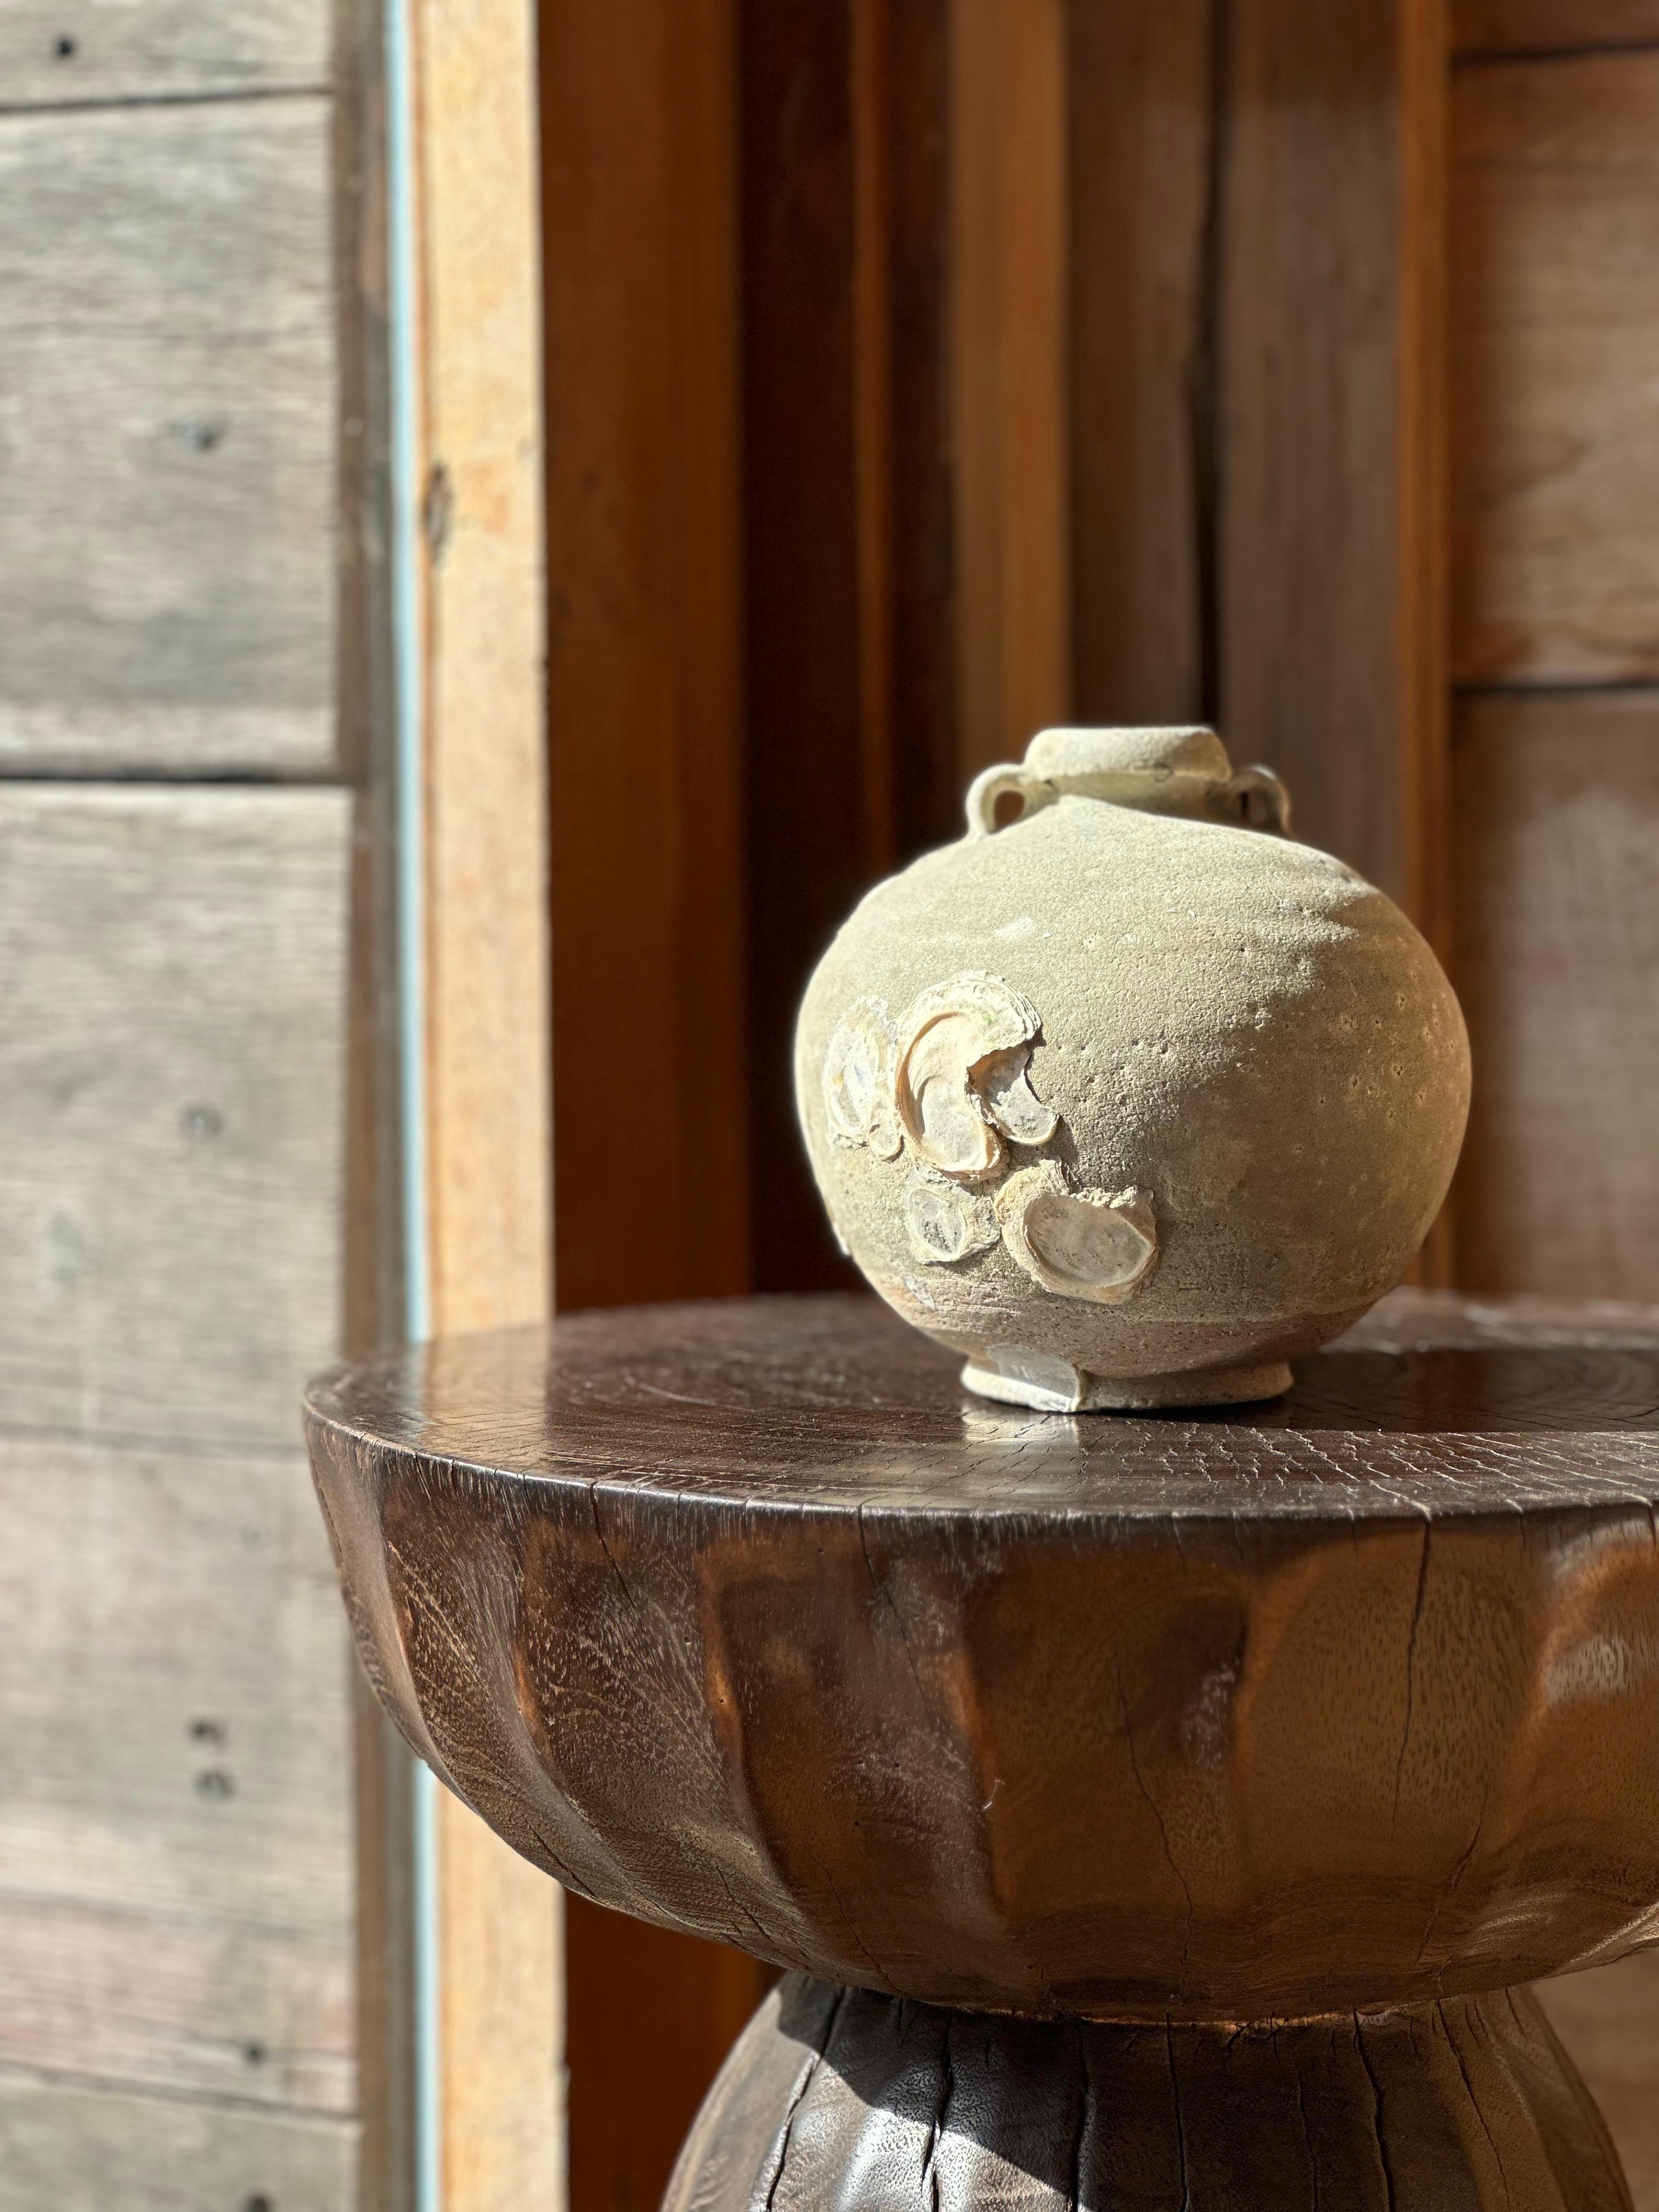 Magnifique exemple de jarre en céramique Sawankhalok du XVIIe siècle provenant du royaume de Sukhothai, en Thaïlande. Elle présente une teinte turquoise merveilleusement subtile ainsi qu'une excroissance marine naturelle qui s'est formée sur son